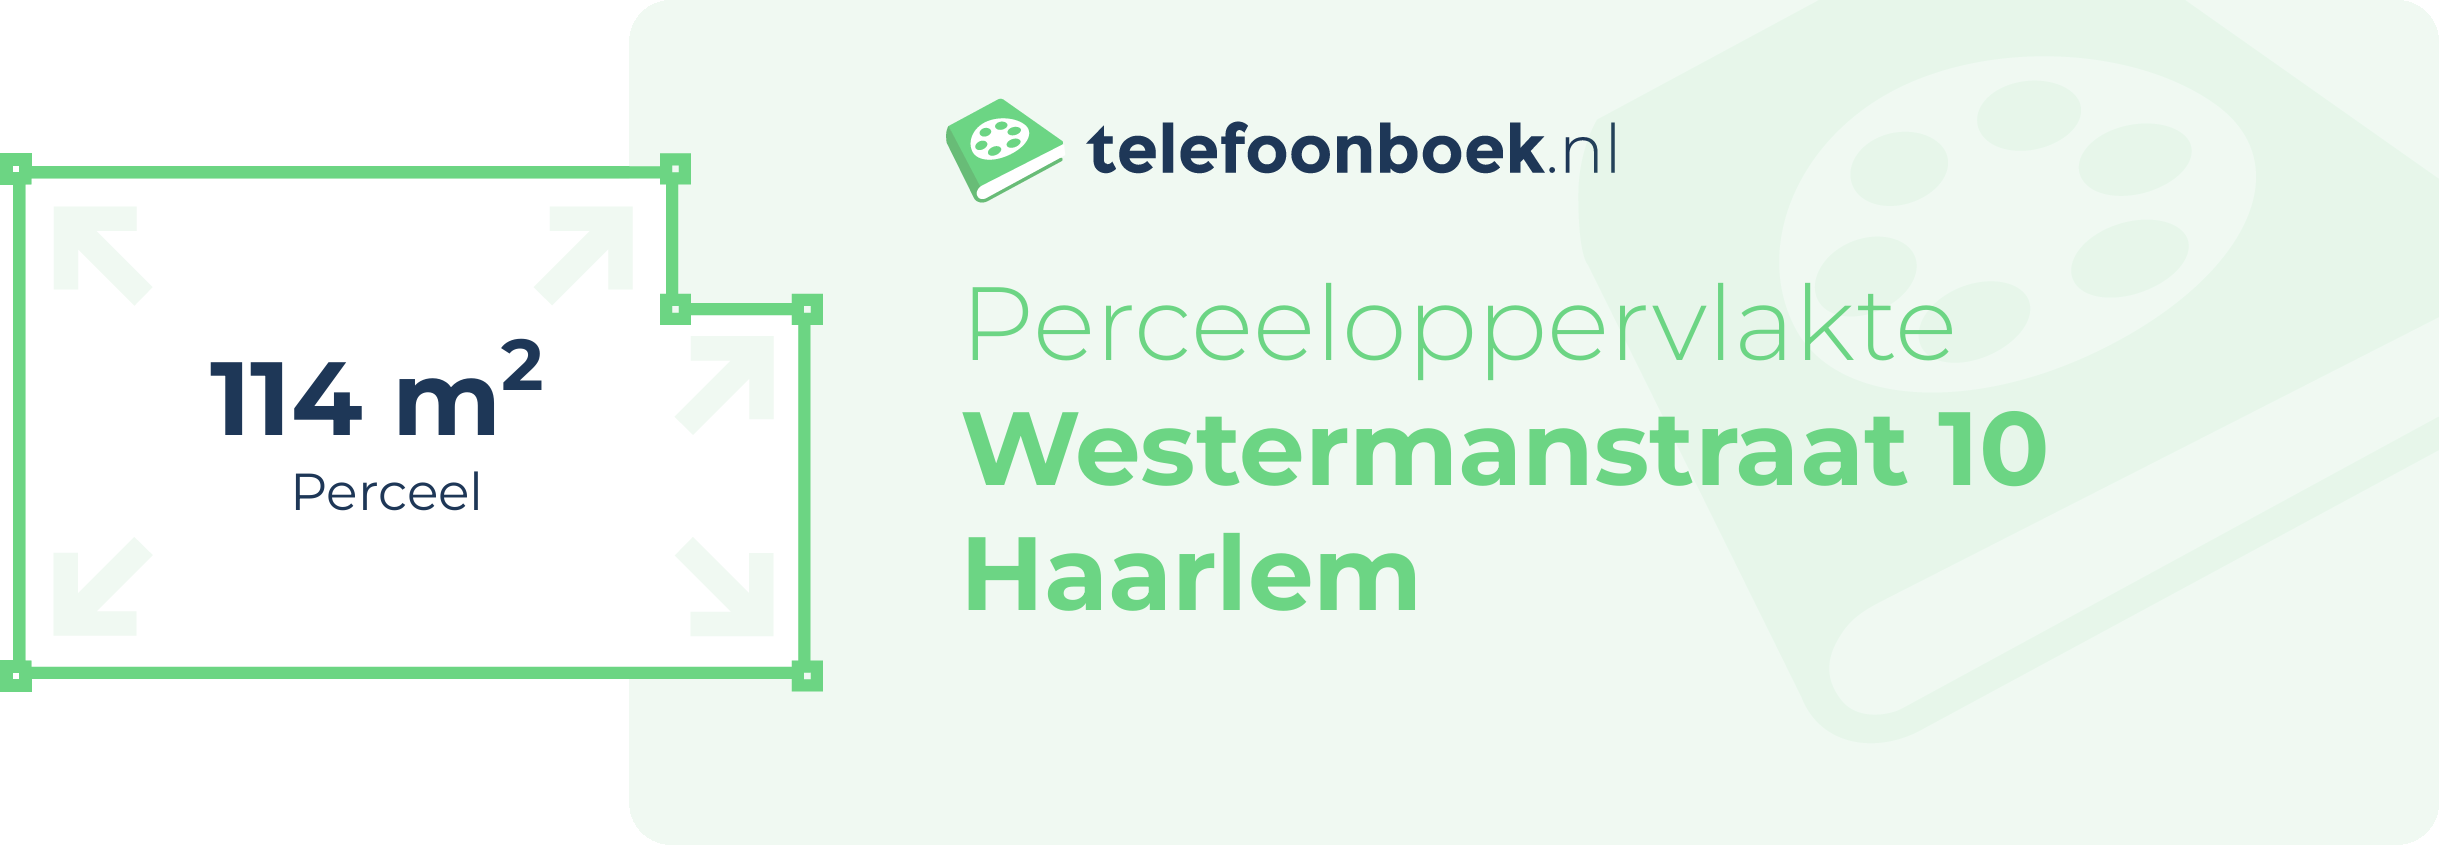 Perceeloppervlakte Westermanstraat 10 Haarlem